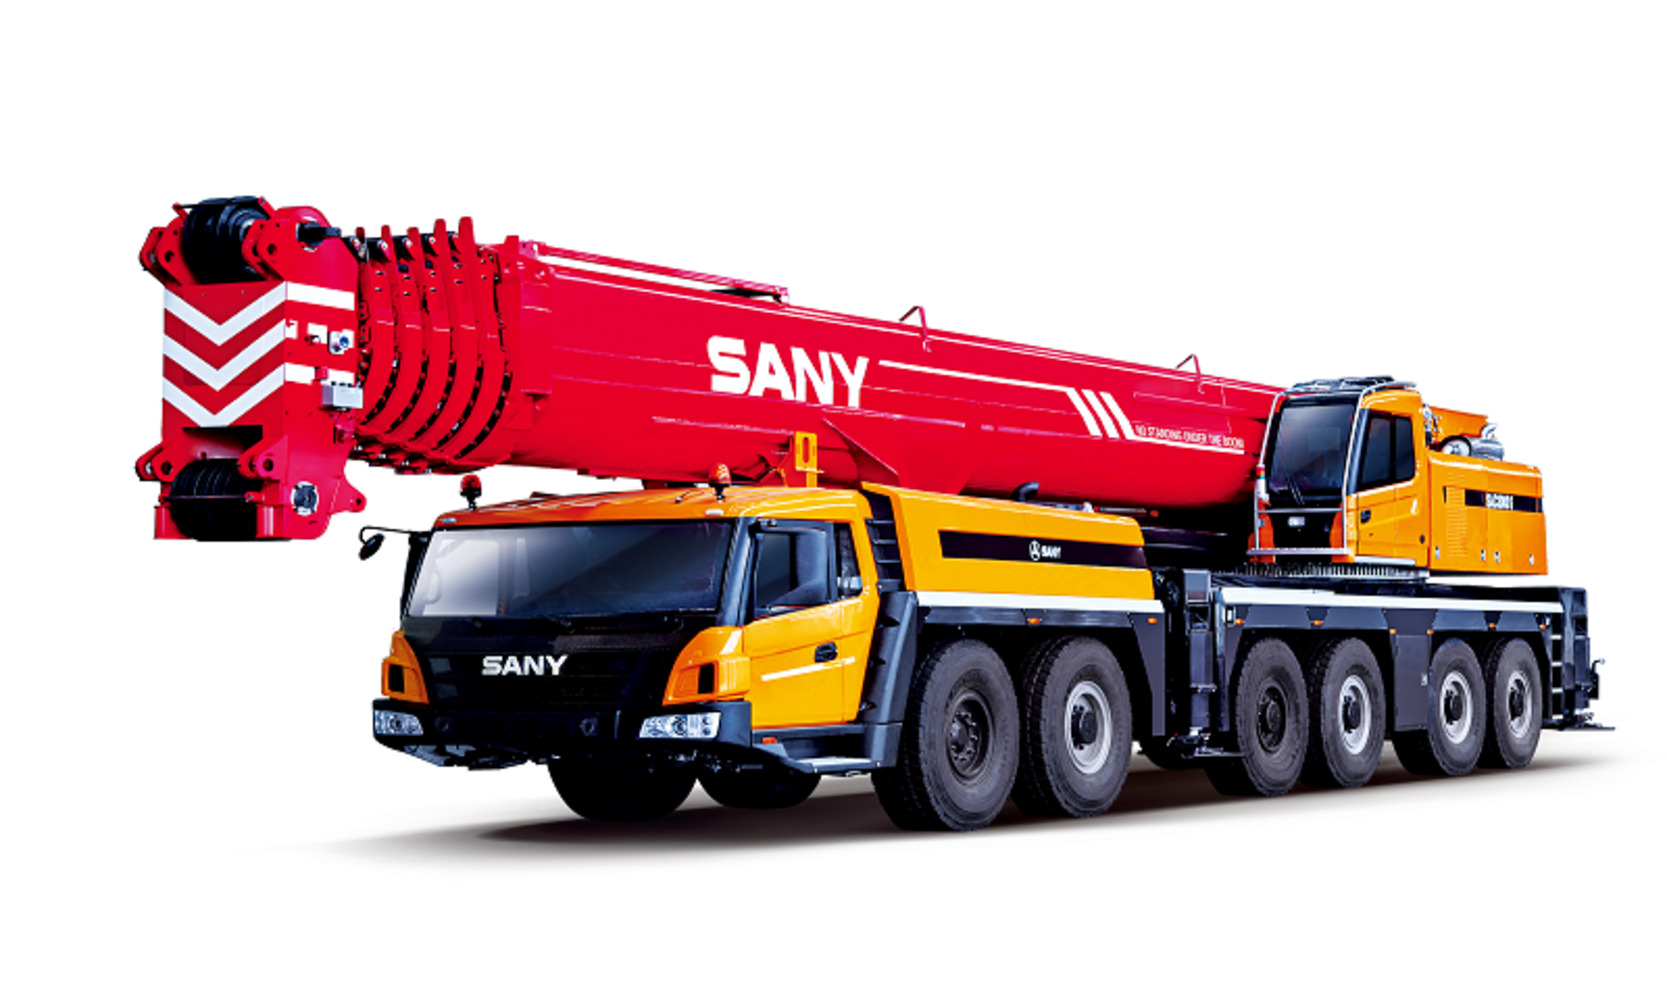 Автокран вездеход Palfinger Sany SAC3000S 300 тонн, 81 метр